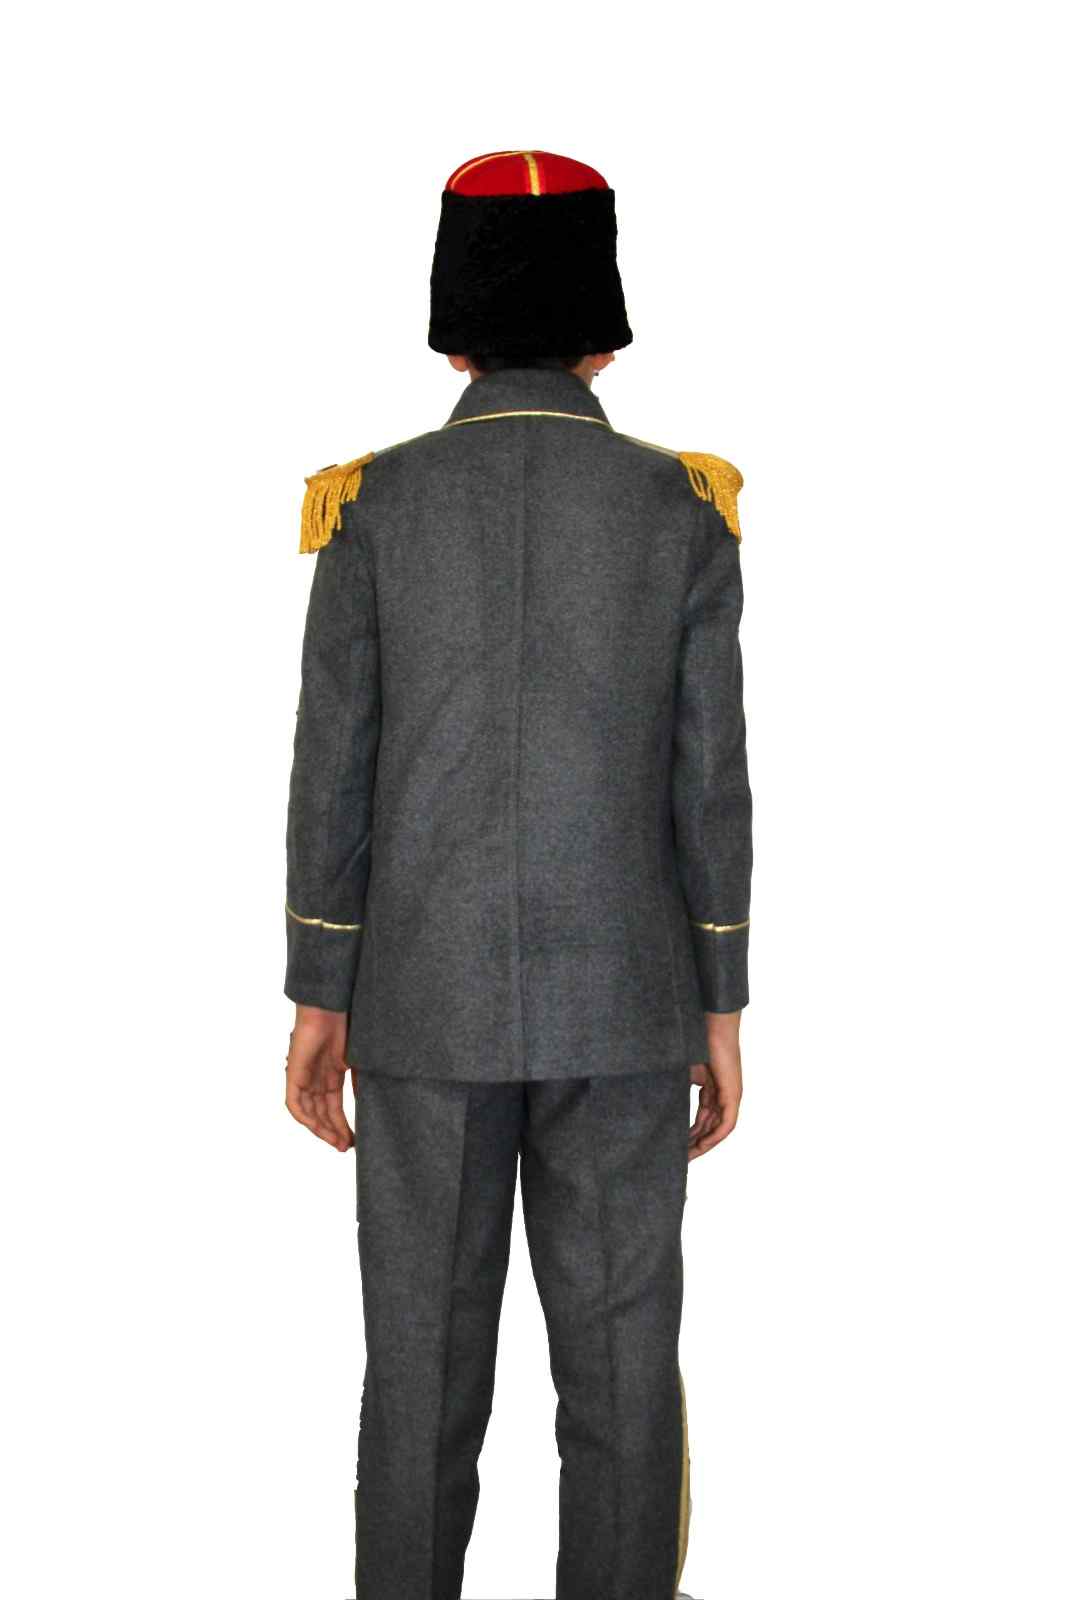 Fransız Komutan Kostümü - Yabancı Komutan Kostümü